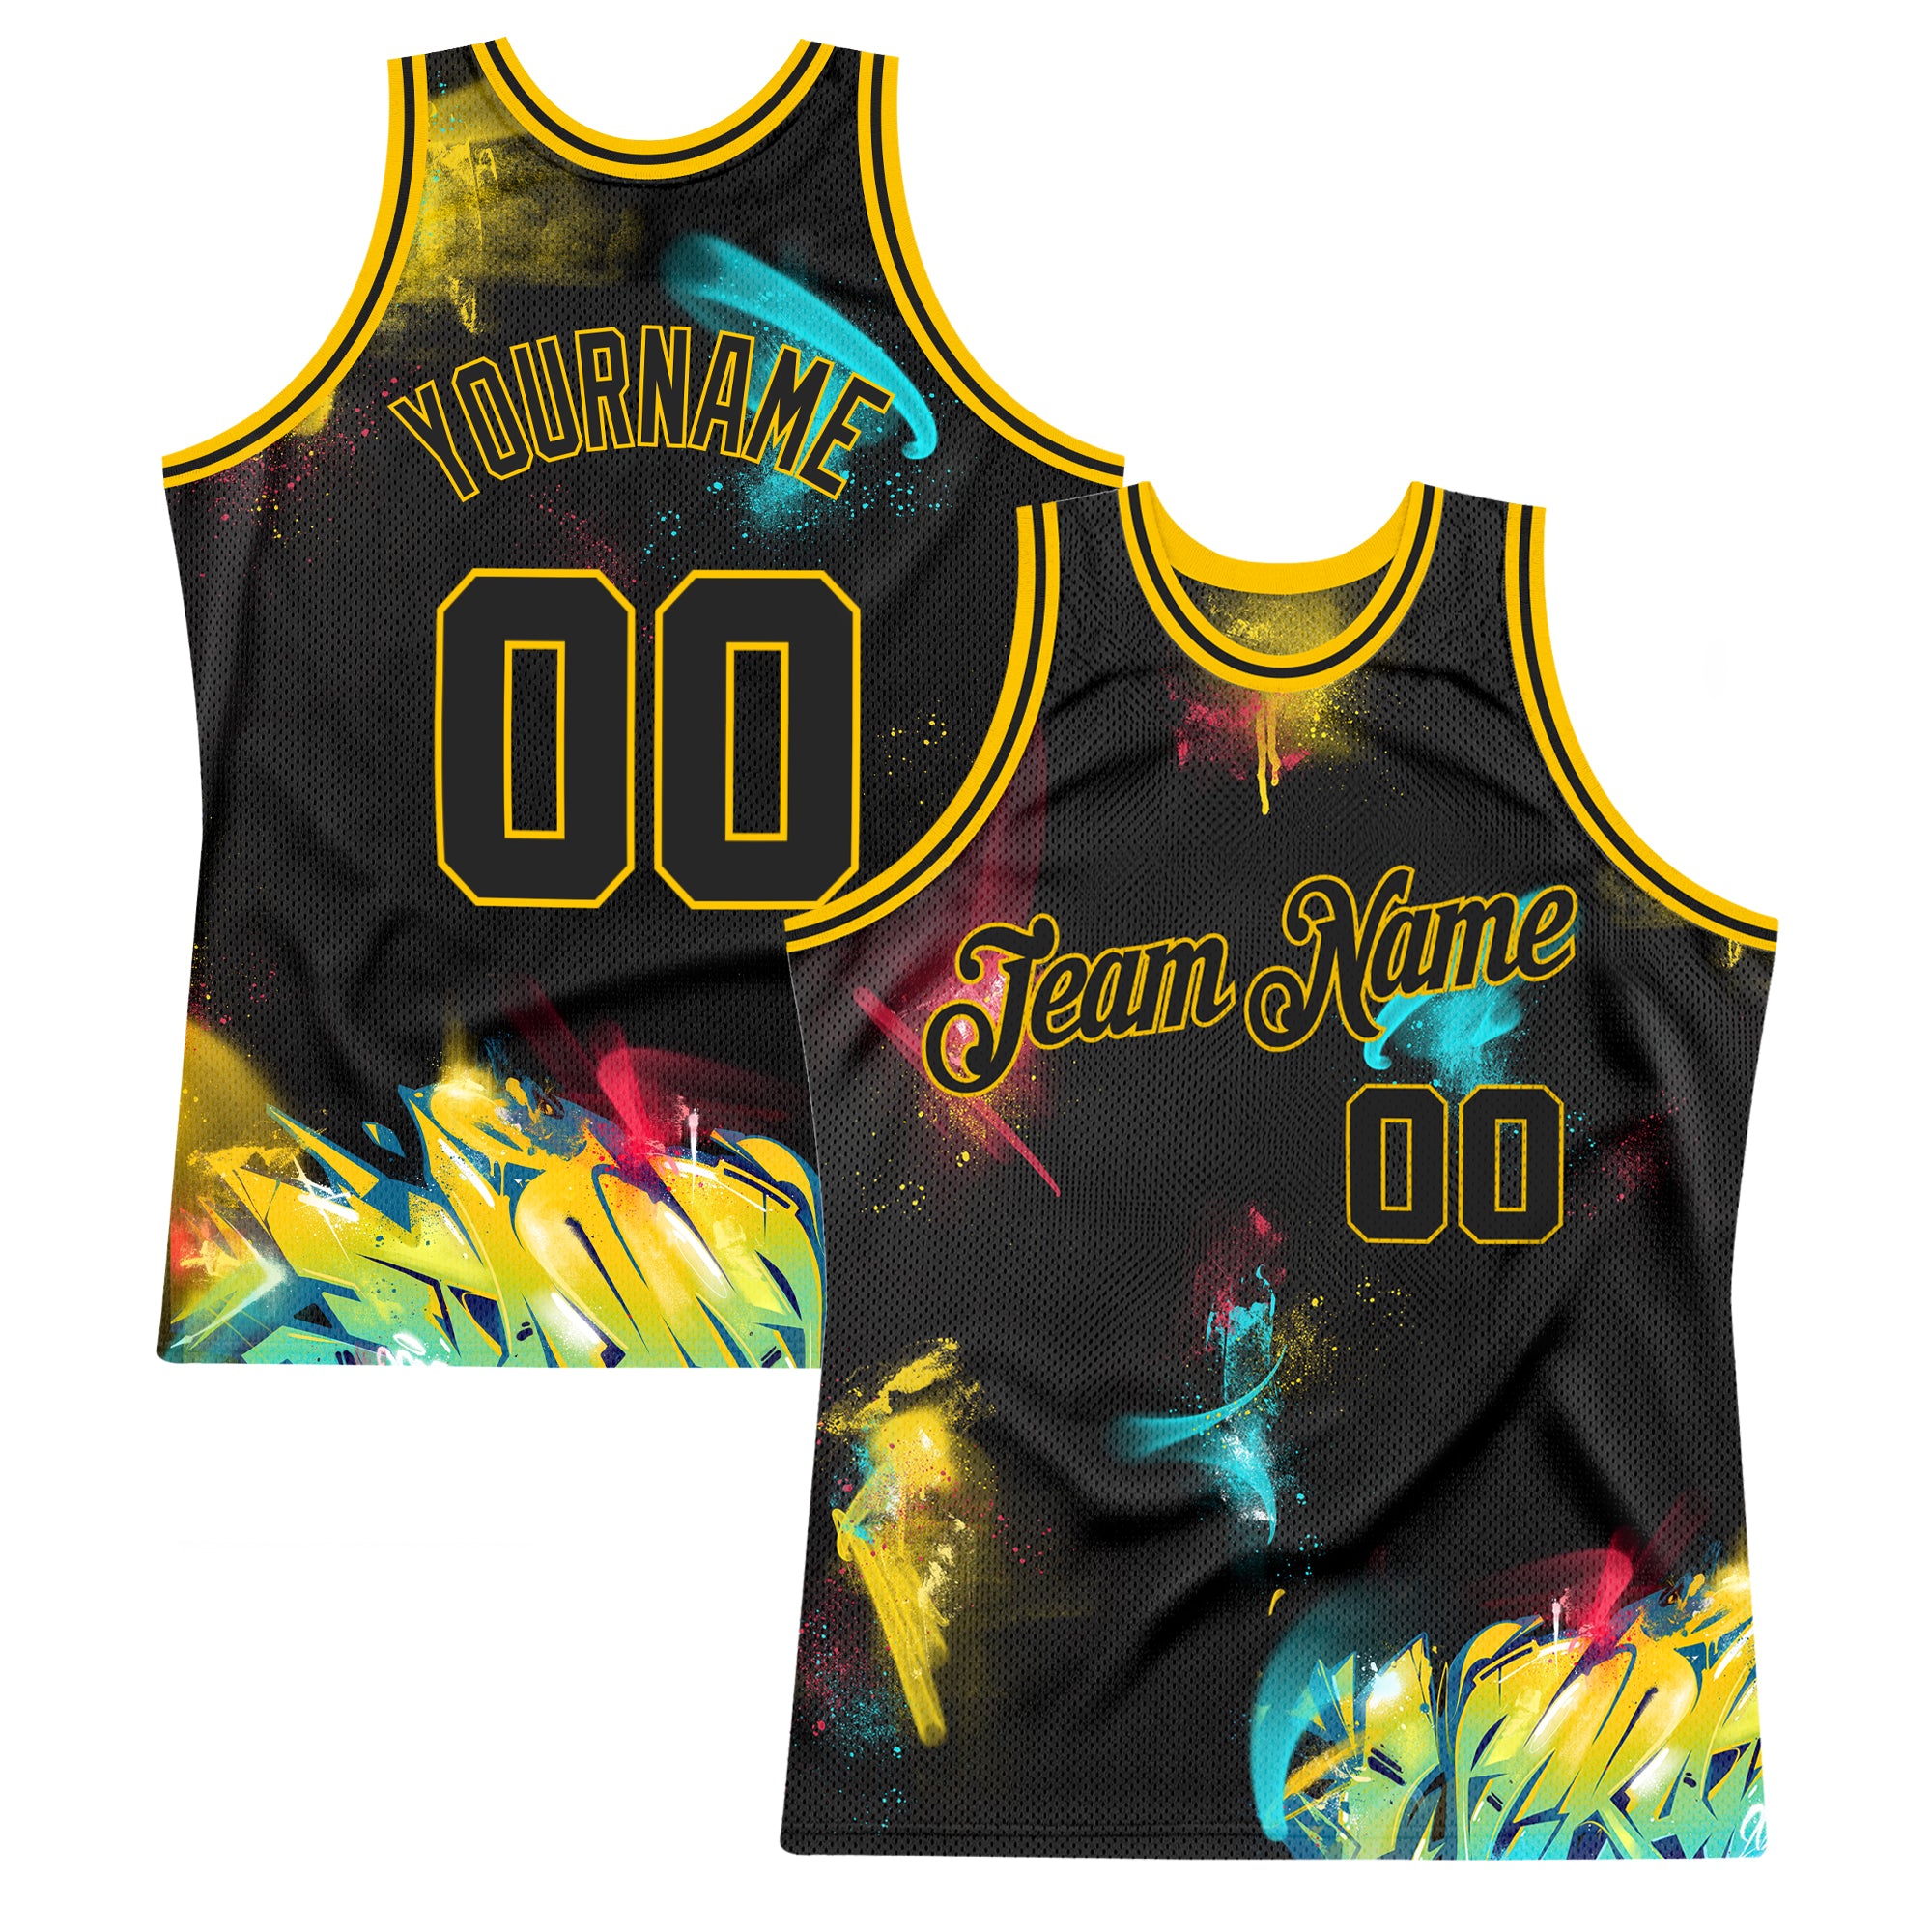 NBA Store  Basketball jersey, Jersey design, Sports jersey design